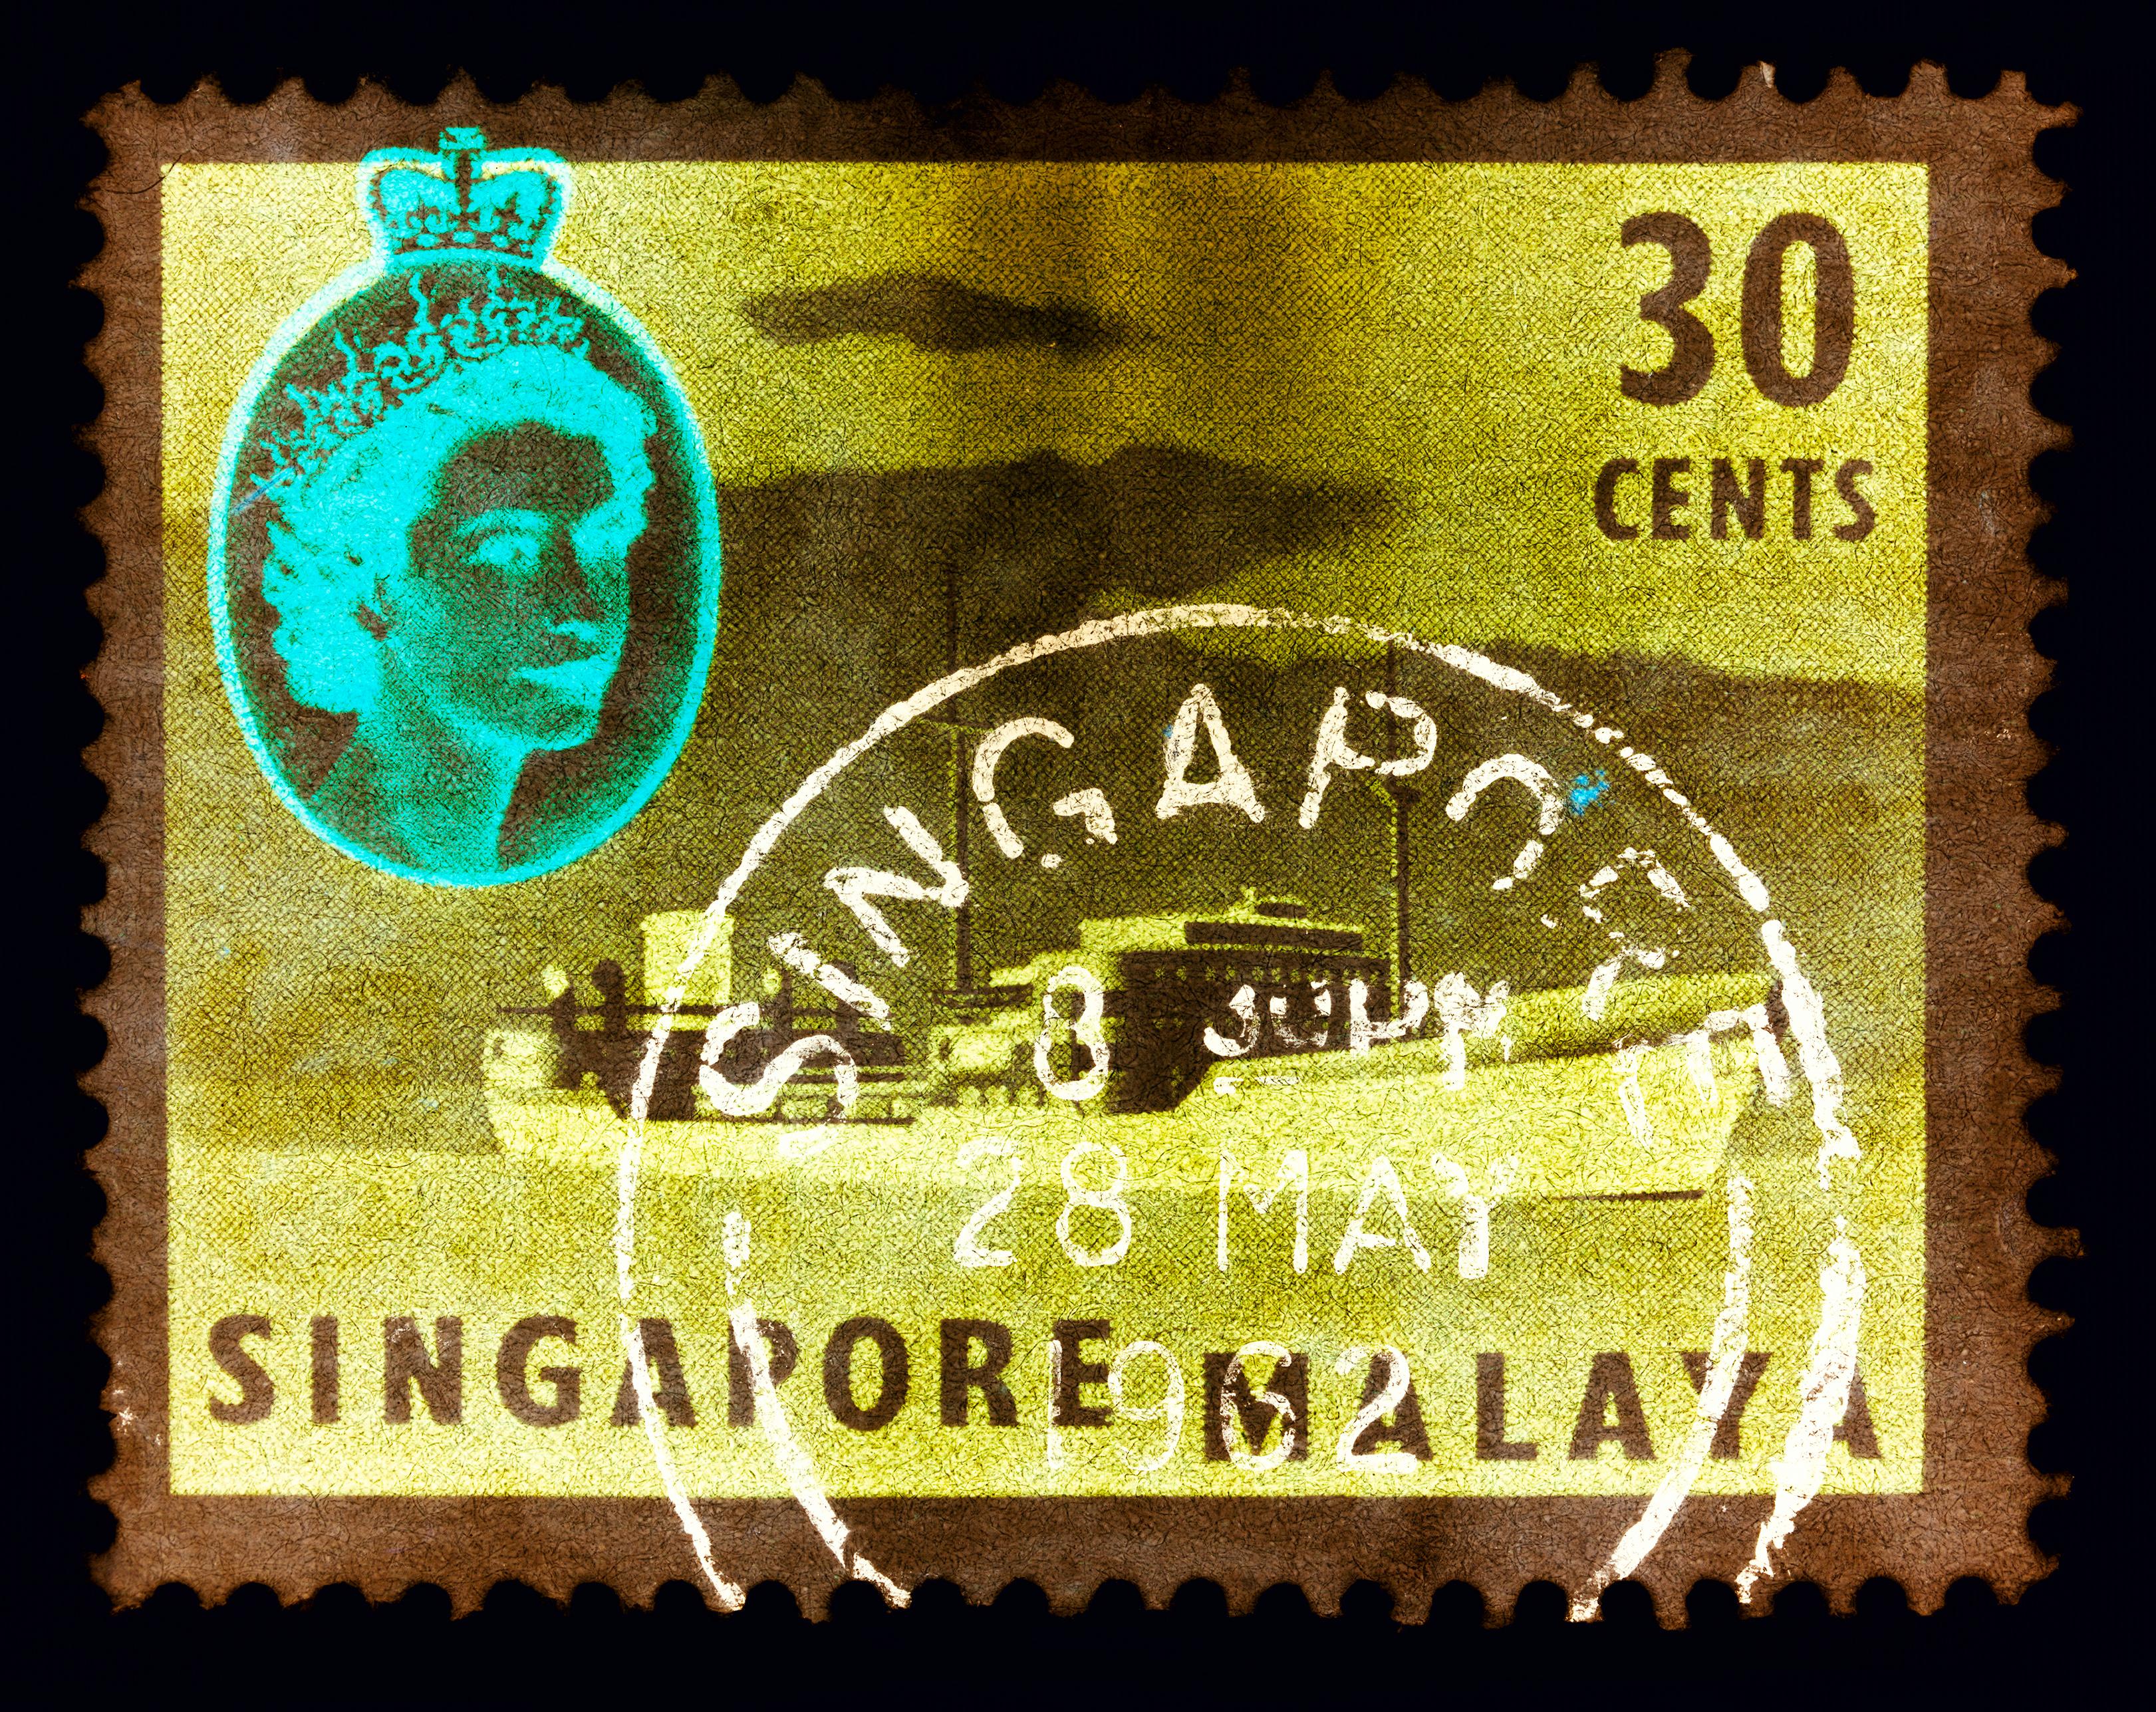 Collection de timbres de Singapour, 30 Cents QEII - Tanker à huile kaki - Photo couleur Pop Art